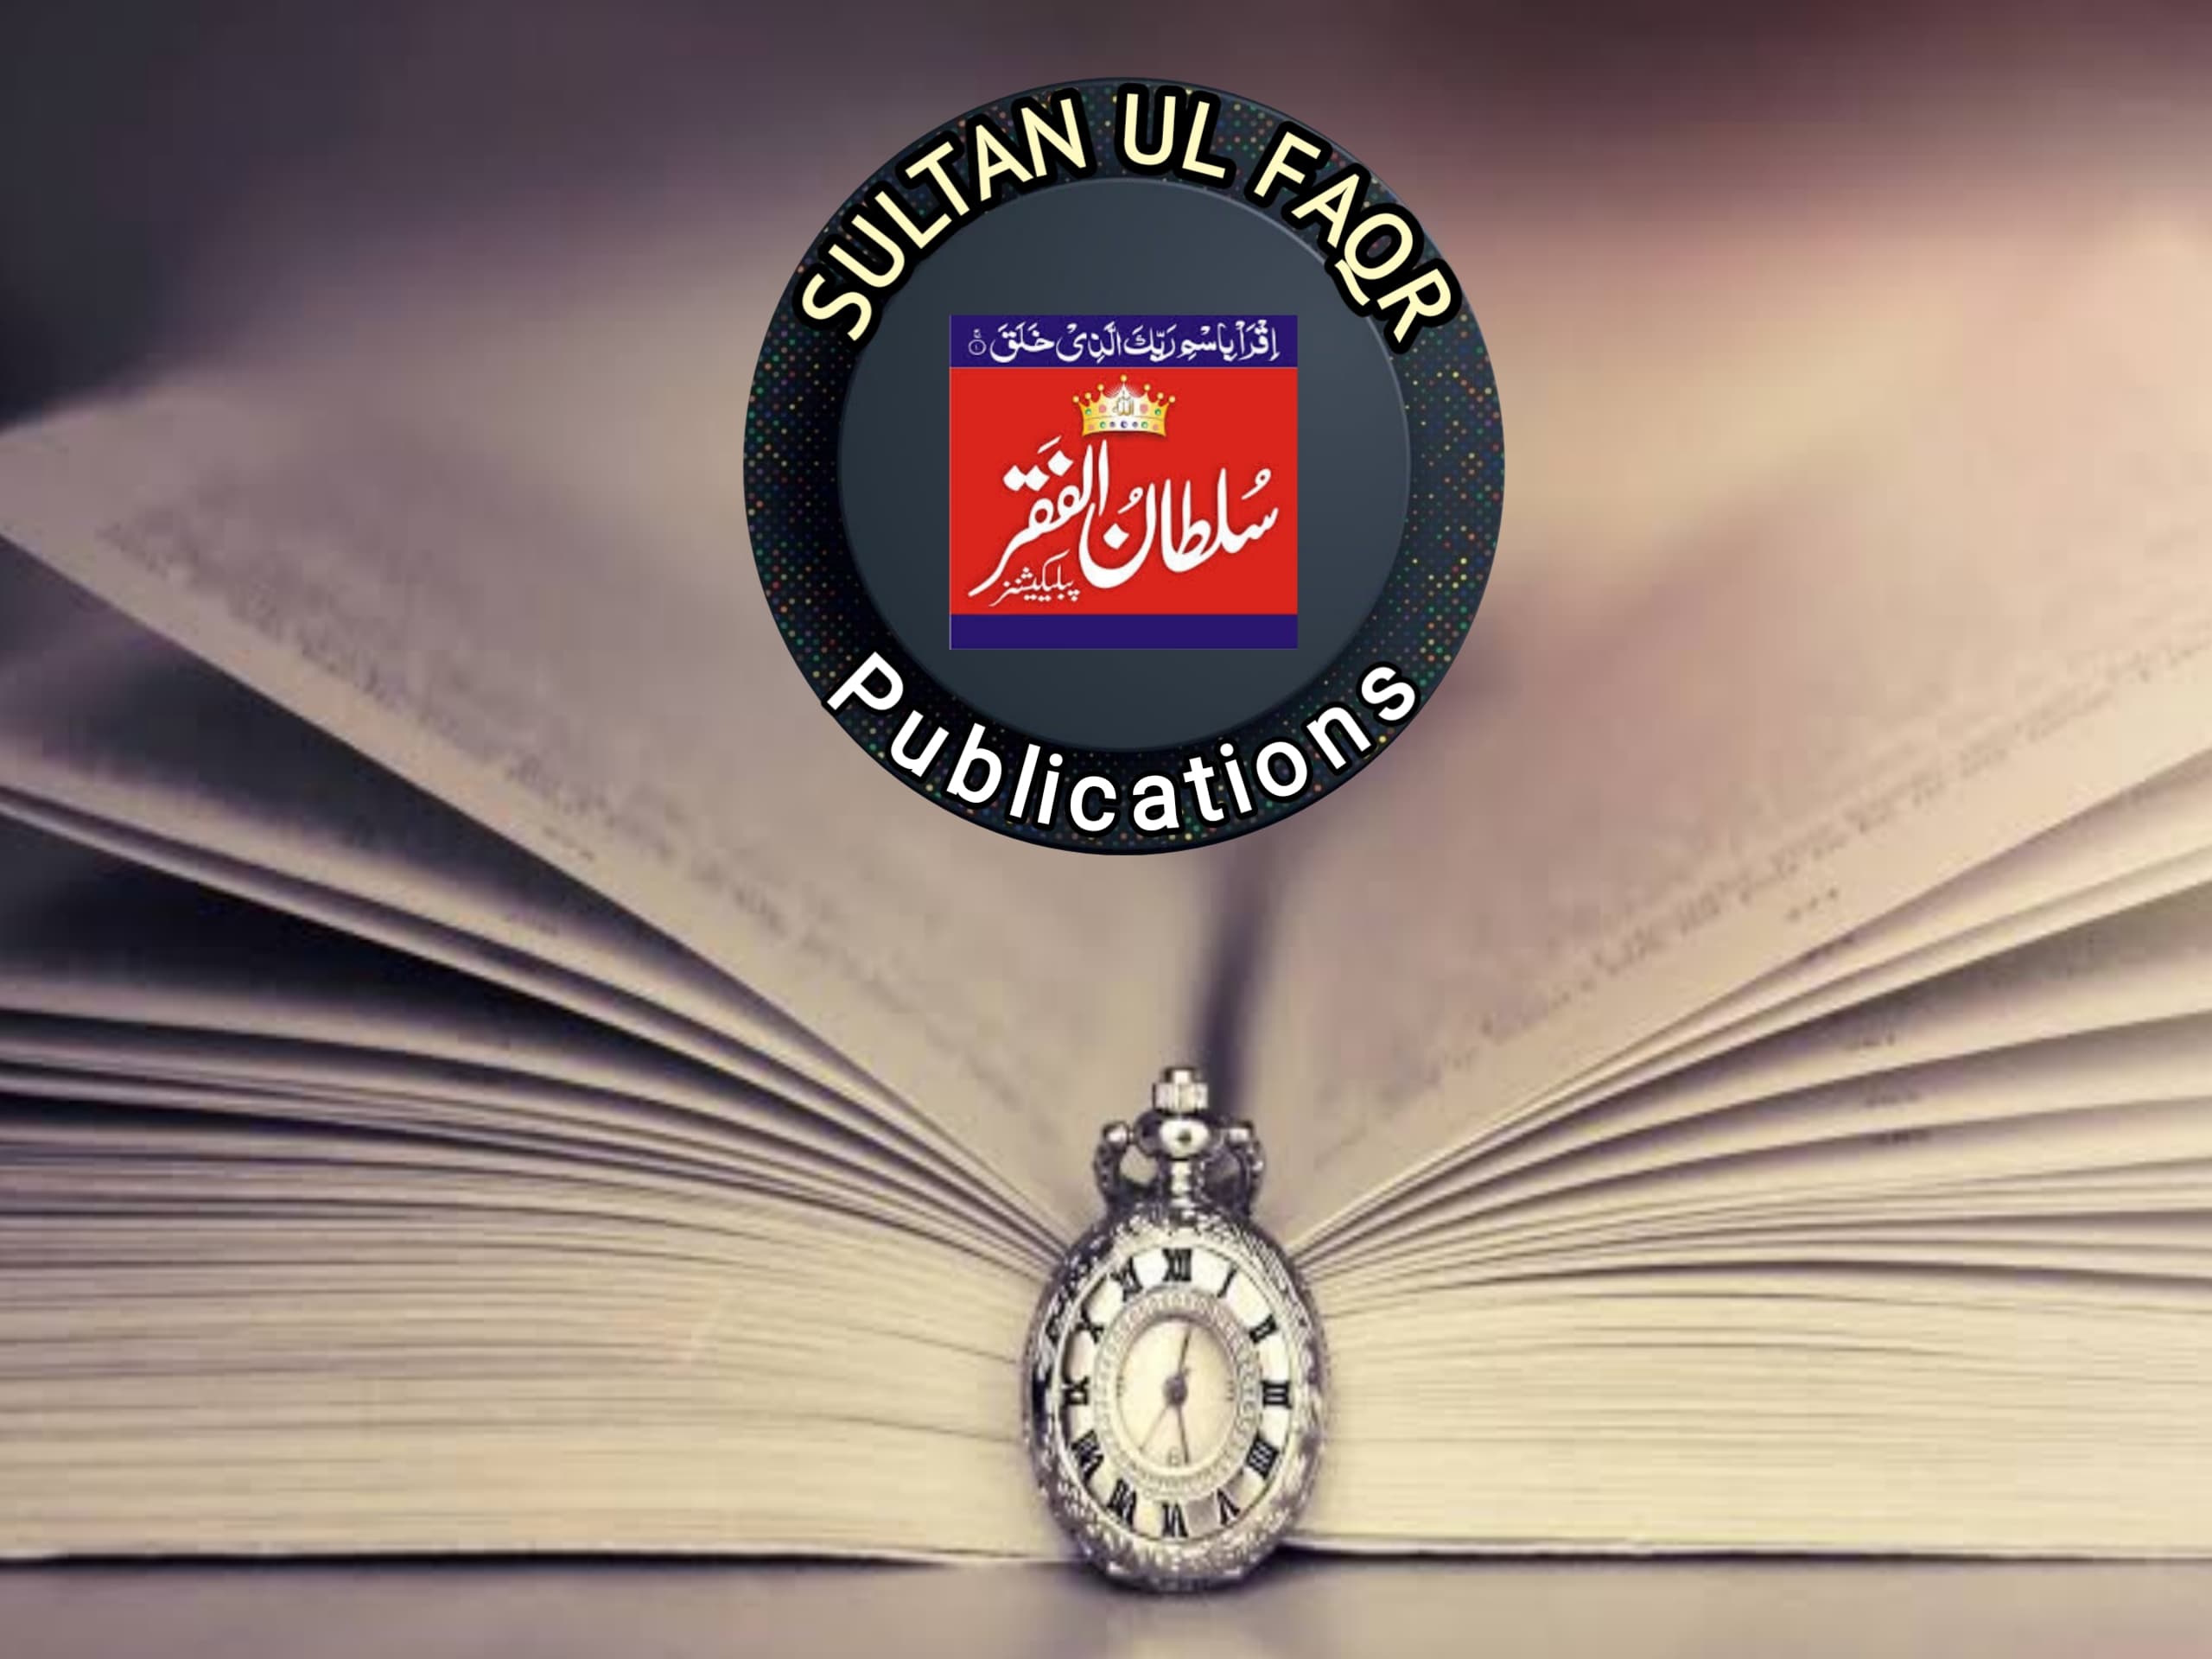 Sultan ul Faqr Publications publisher of sultan bahoo urdu books